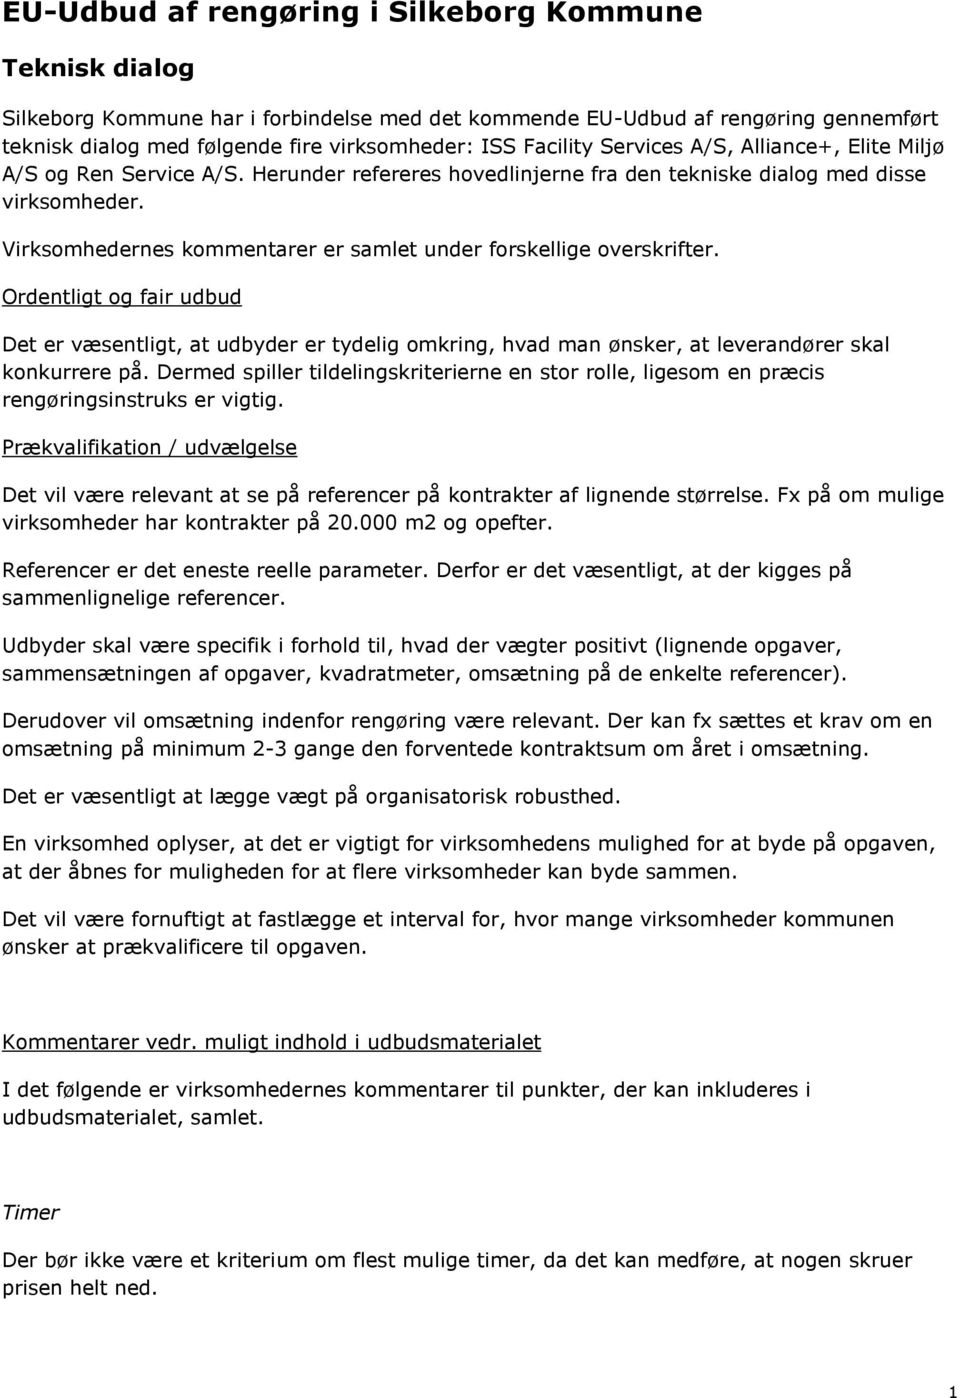 EU-Udbud af rengøring i Silkeborg Kommune - PDF Free Download